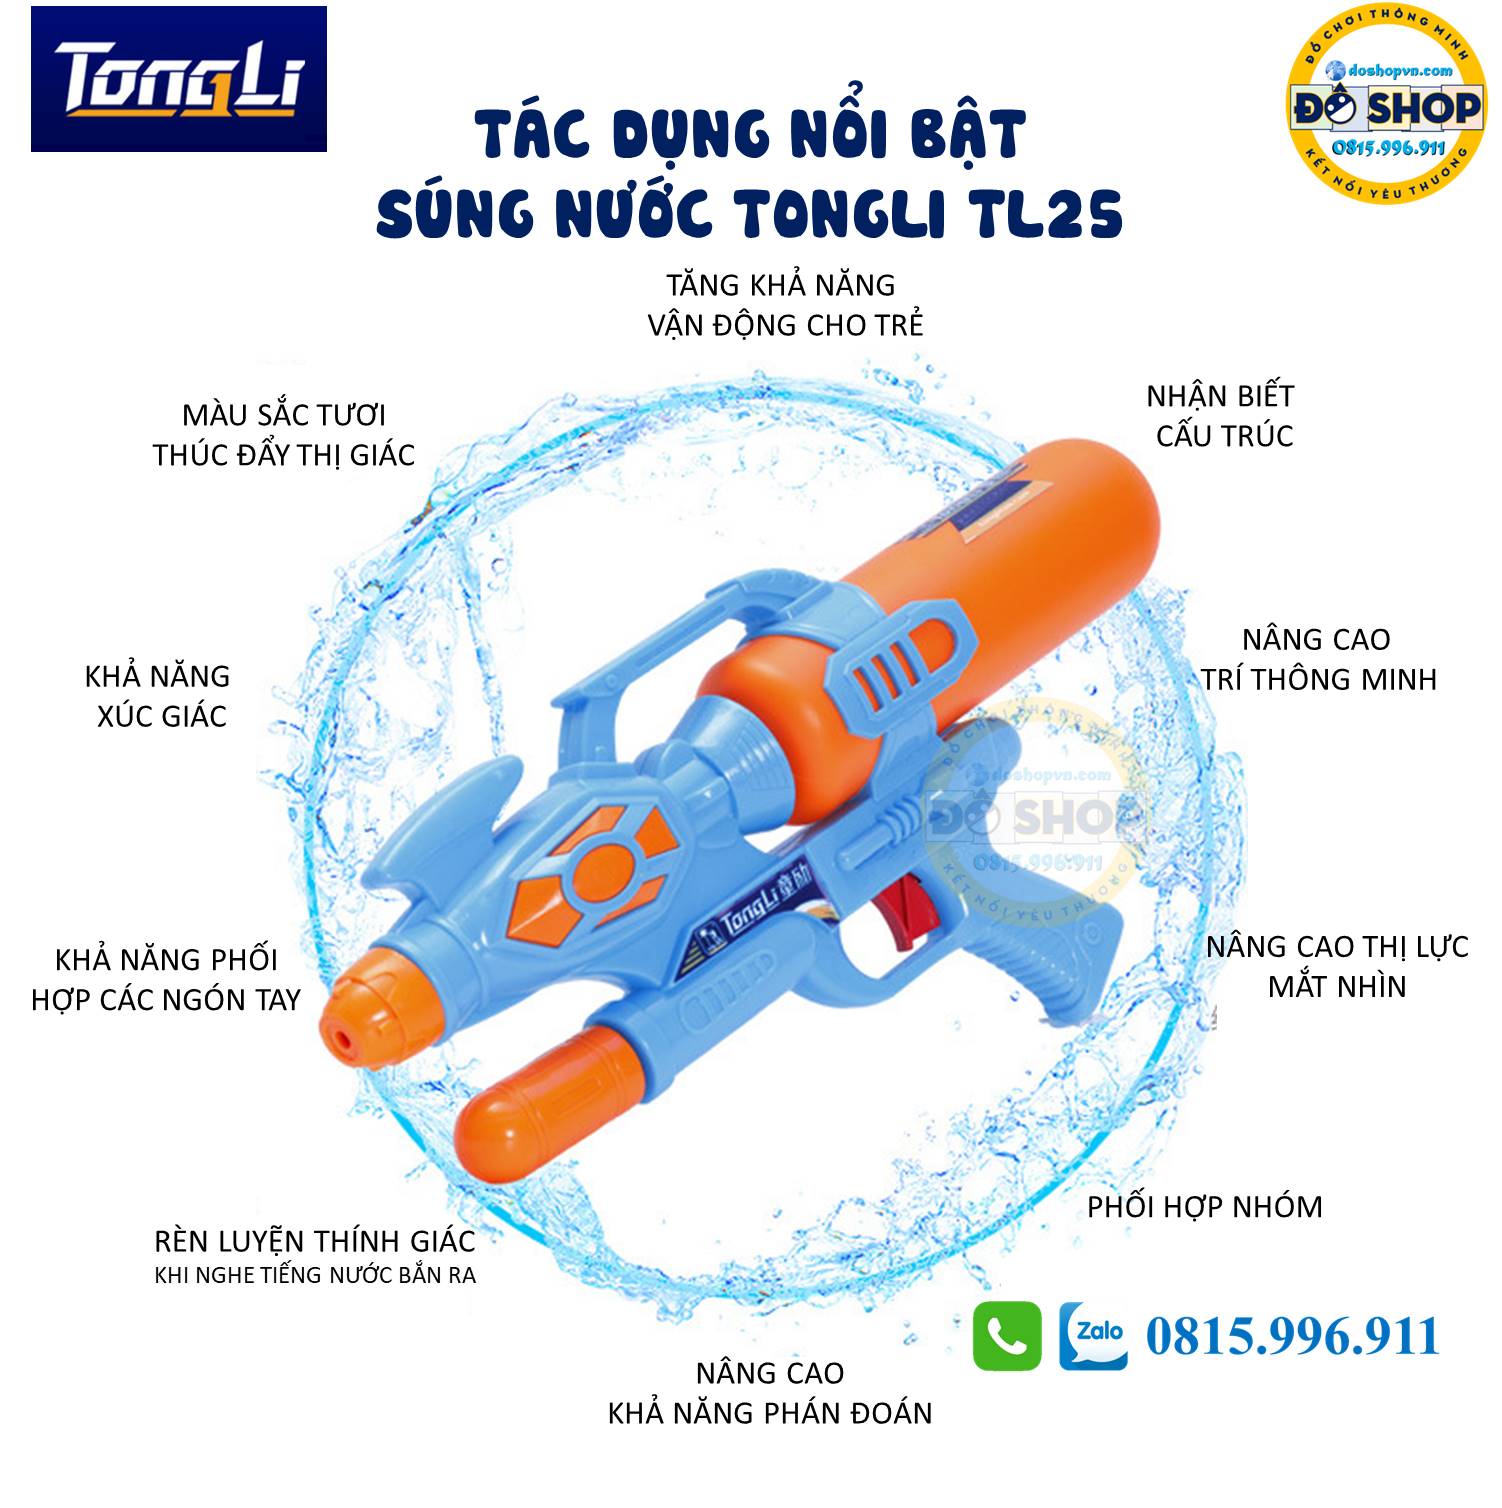 Tác dụng của đồ chơi súng nước TongLi TL25